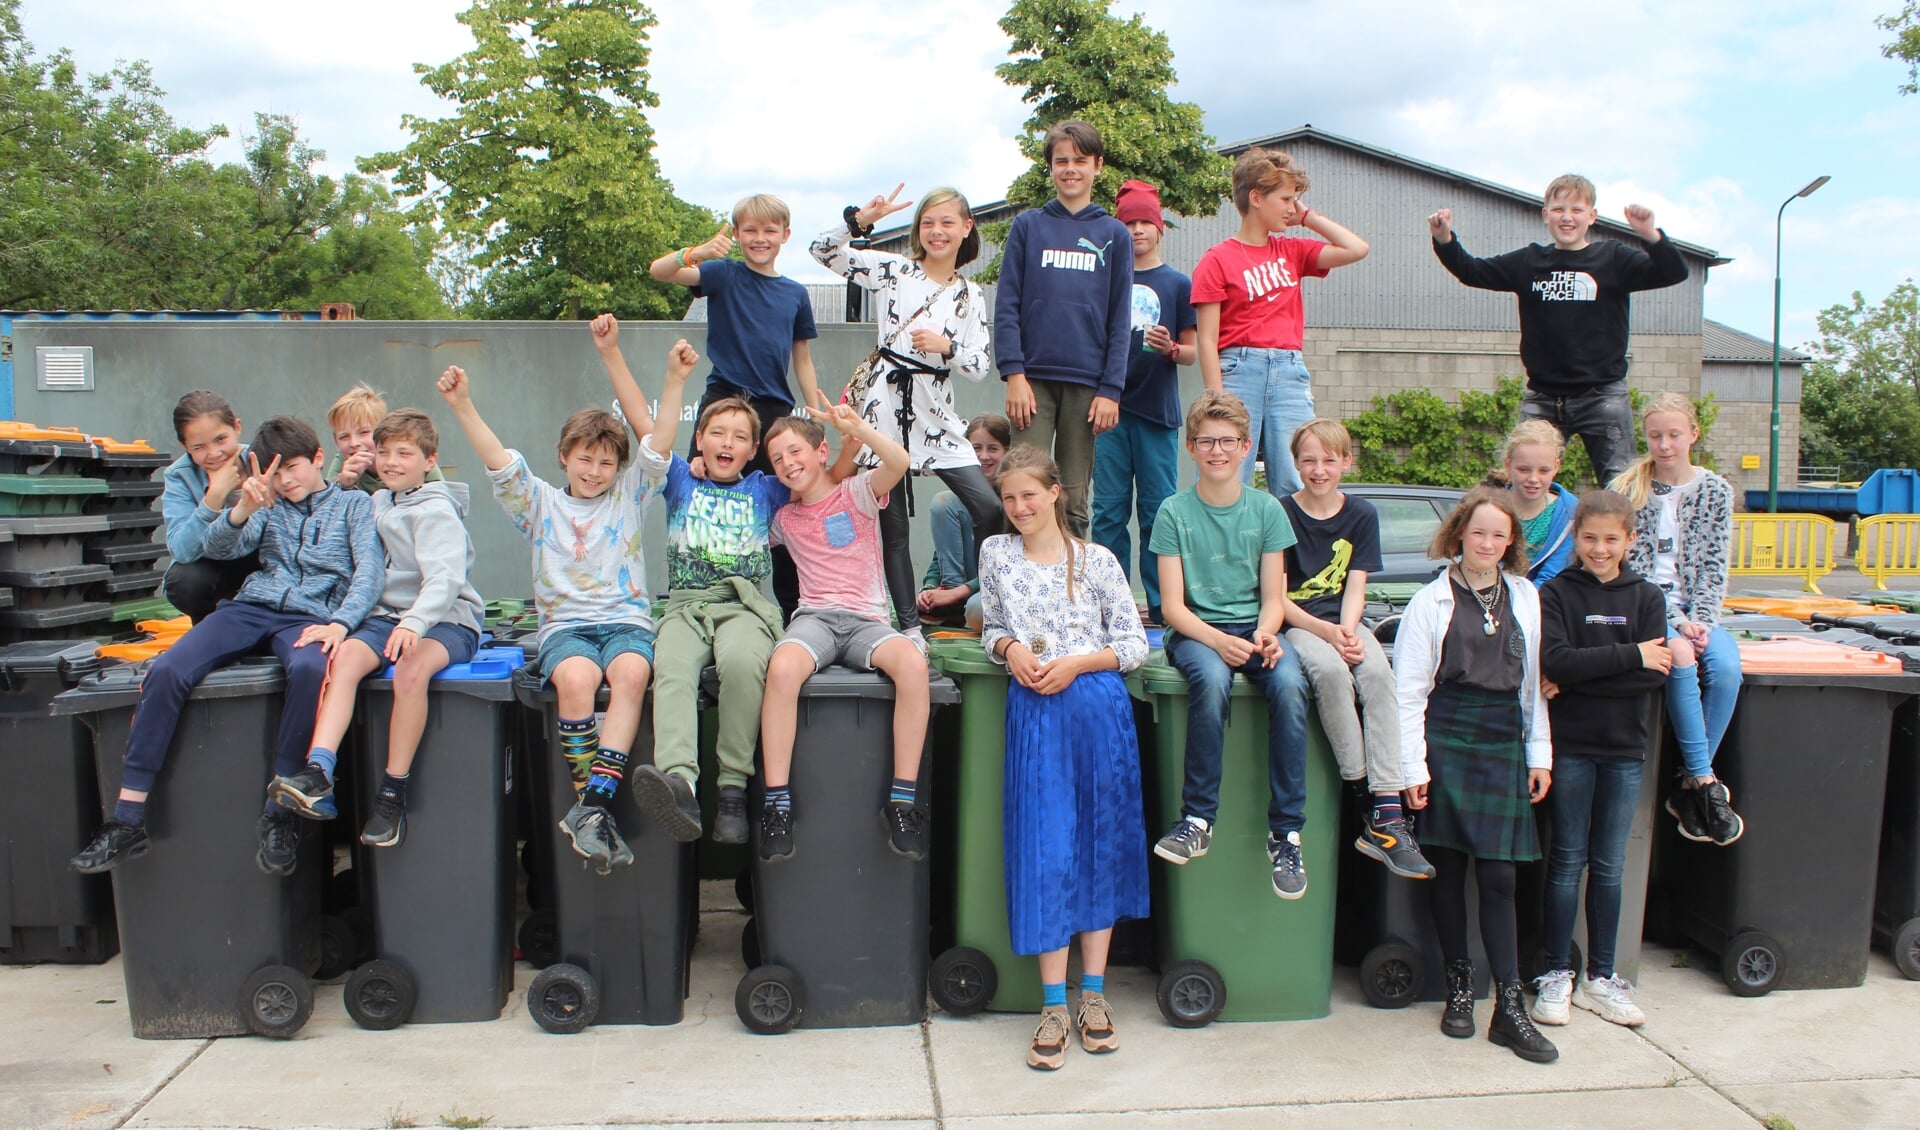 Feline met leerlingen van Basisschool Het Zonnewiel uit De Bilt tijdens de Zwerfafval Challenge in juni 2022.